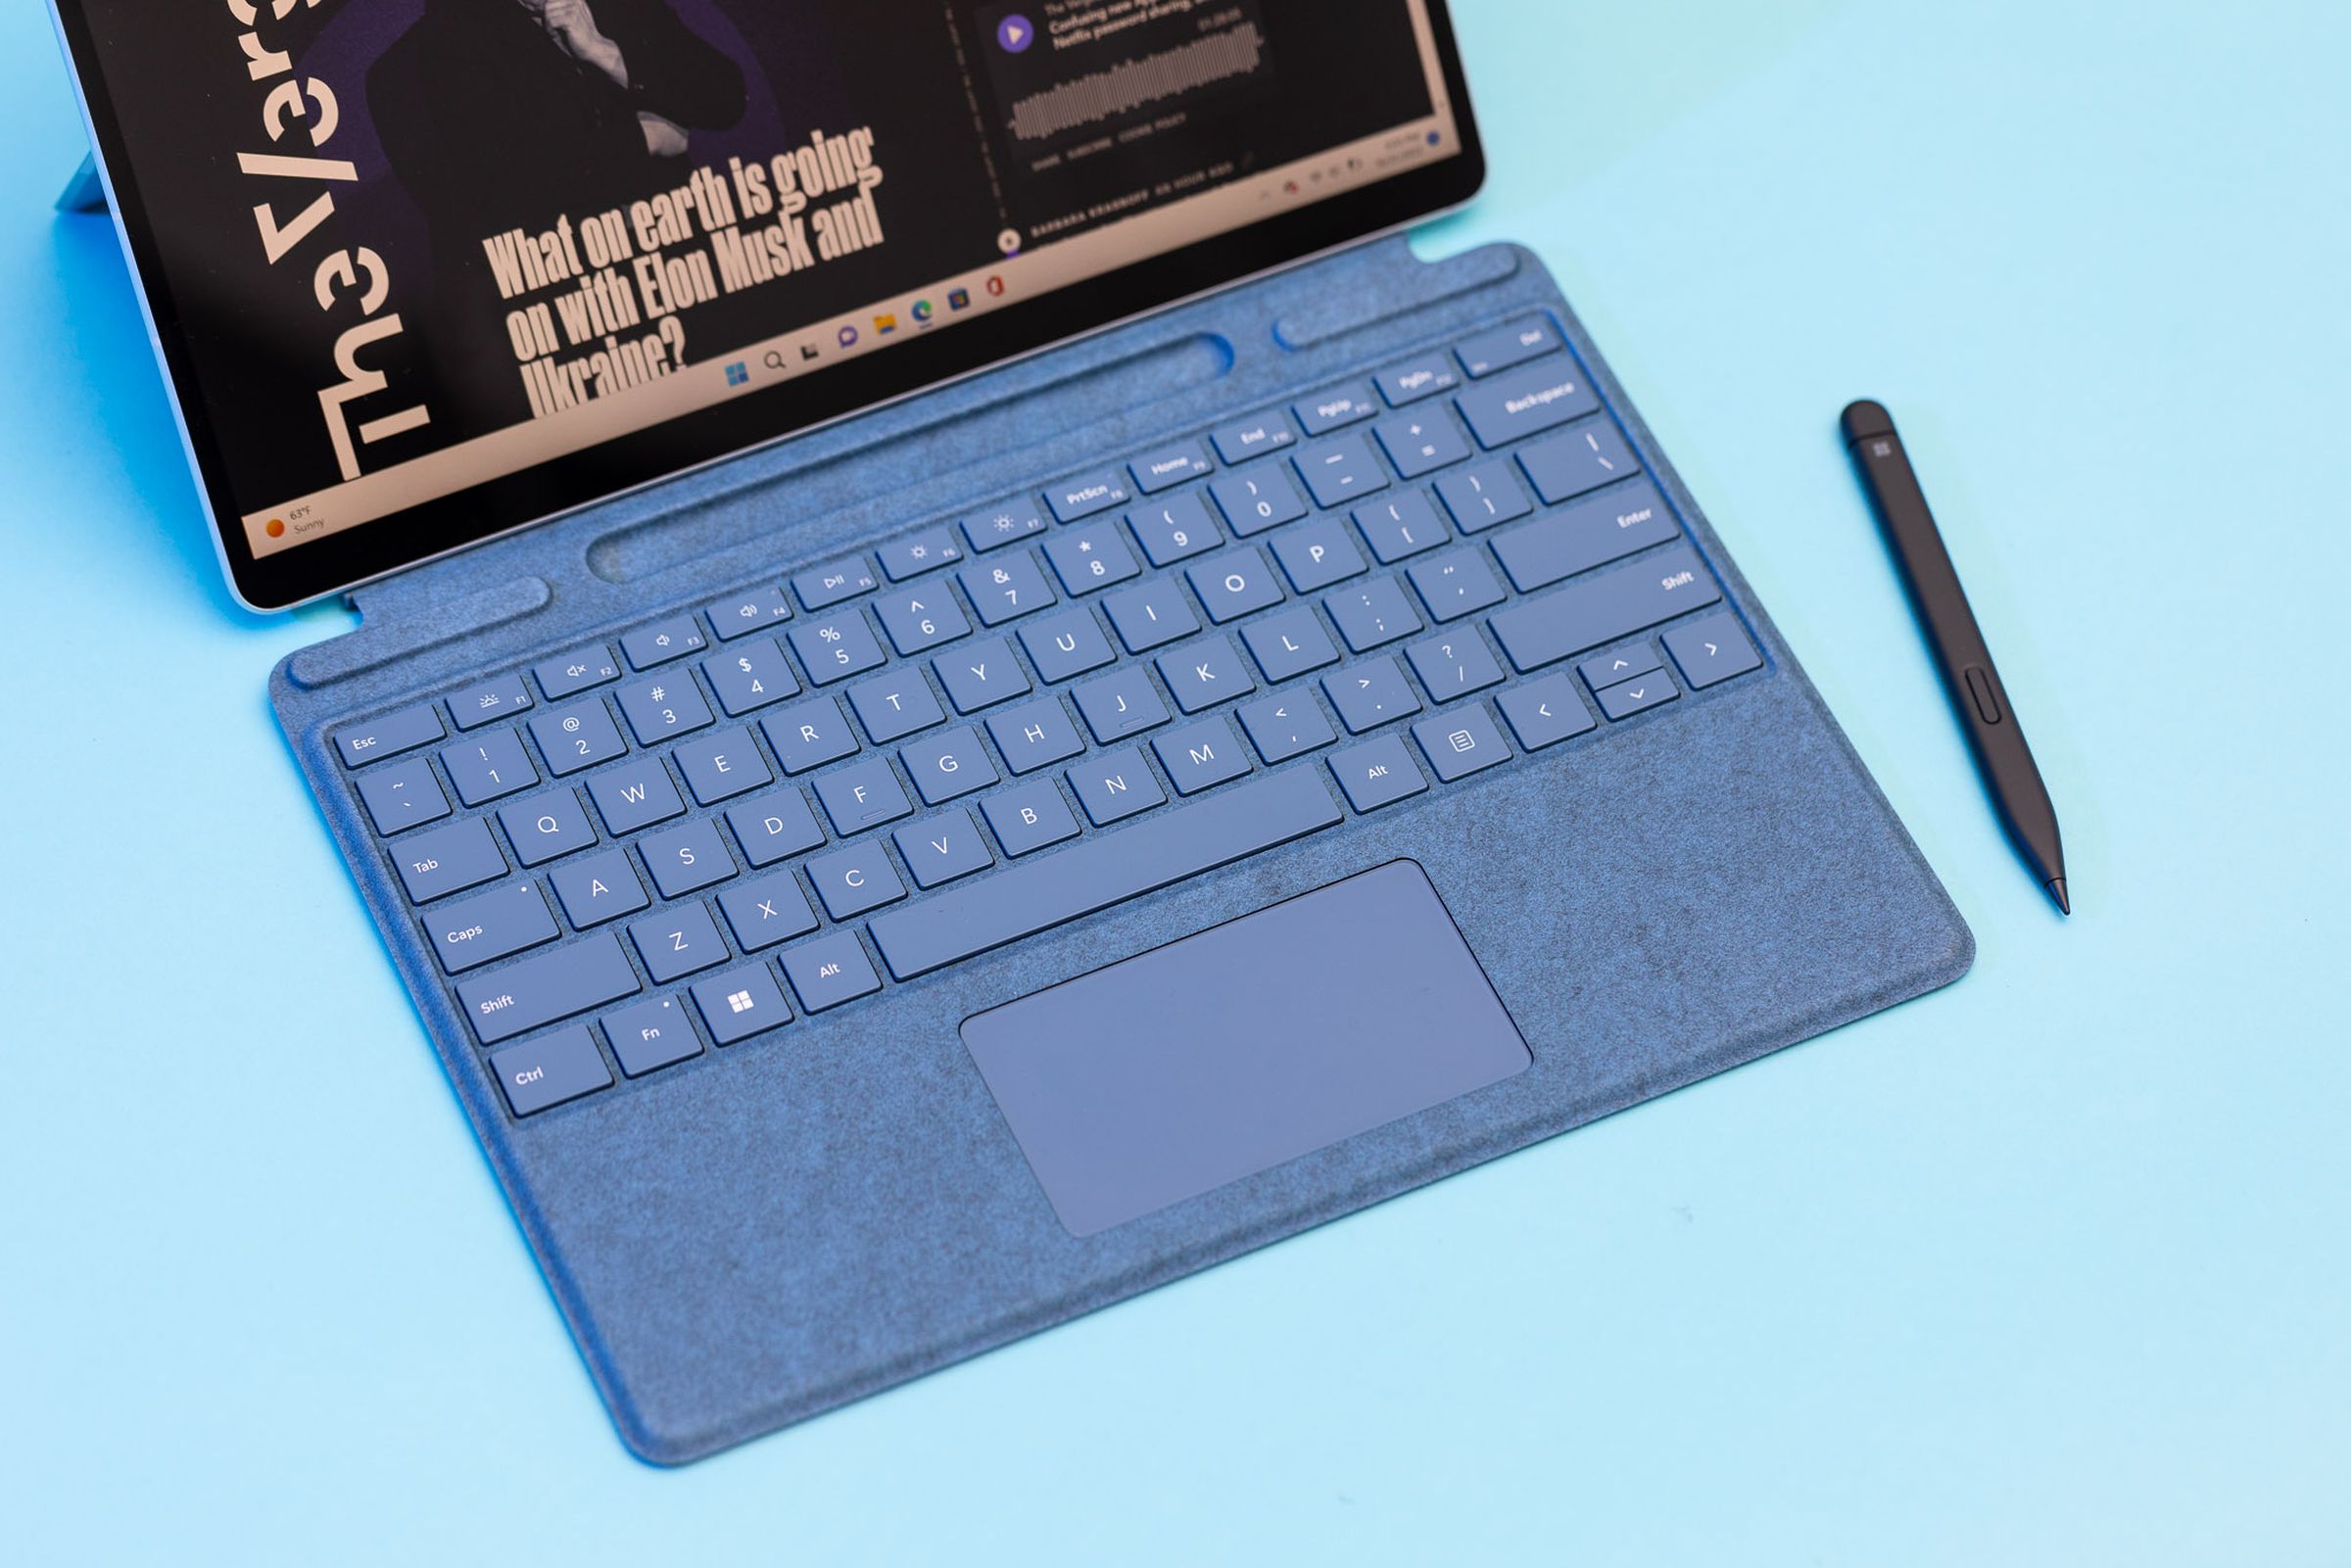 Mavi bir masa örtüsü üzerinde yukarıdan görülen Surface Pro 9 klavye destesi ve ekran kalemi.